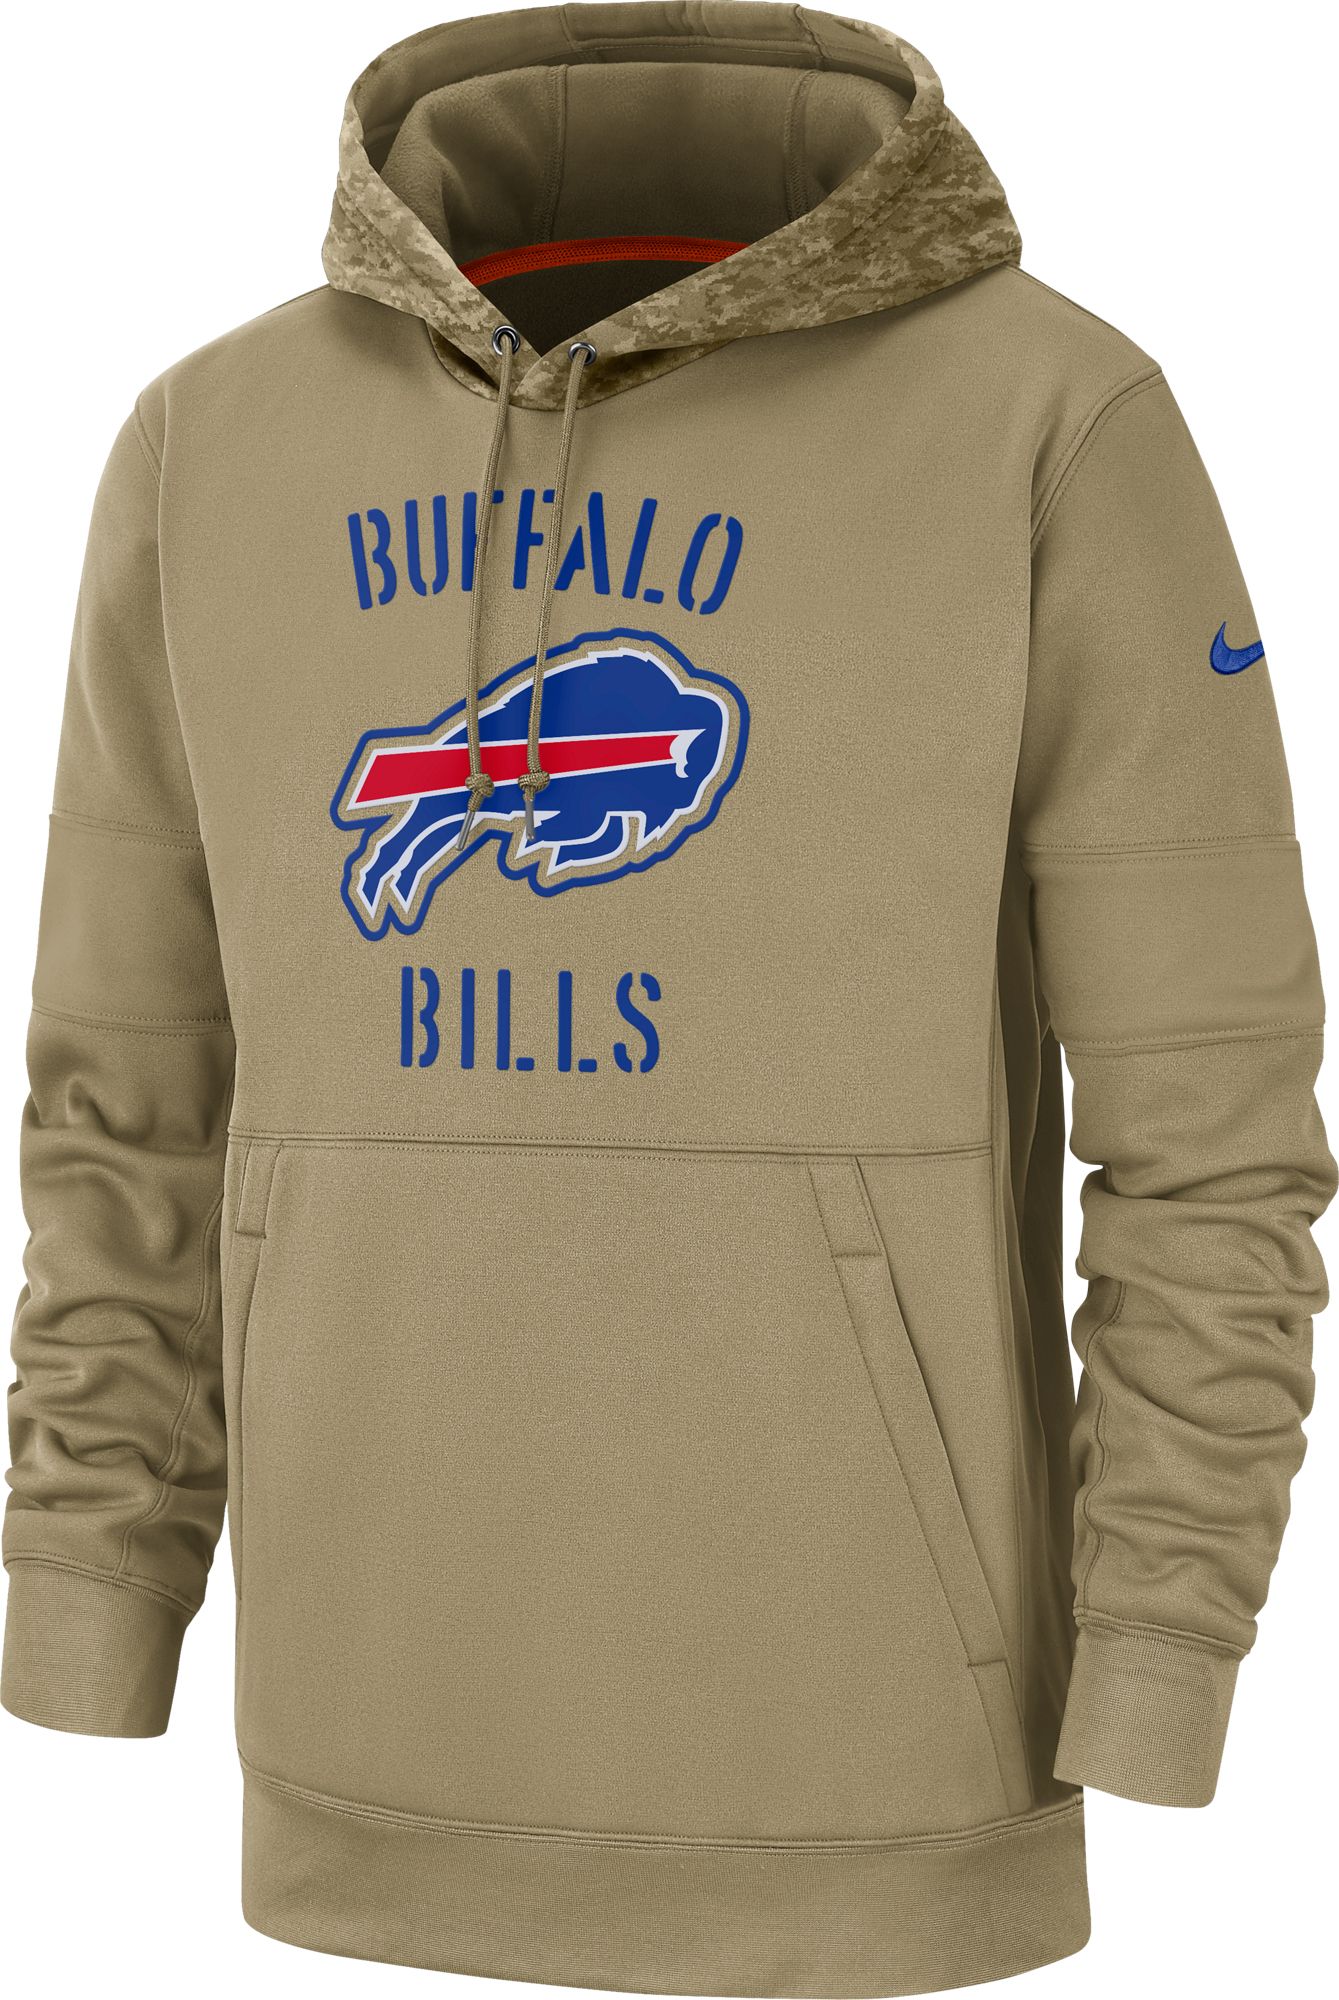 buffalo bills military sweatshirt